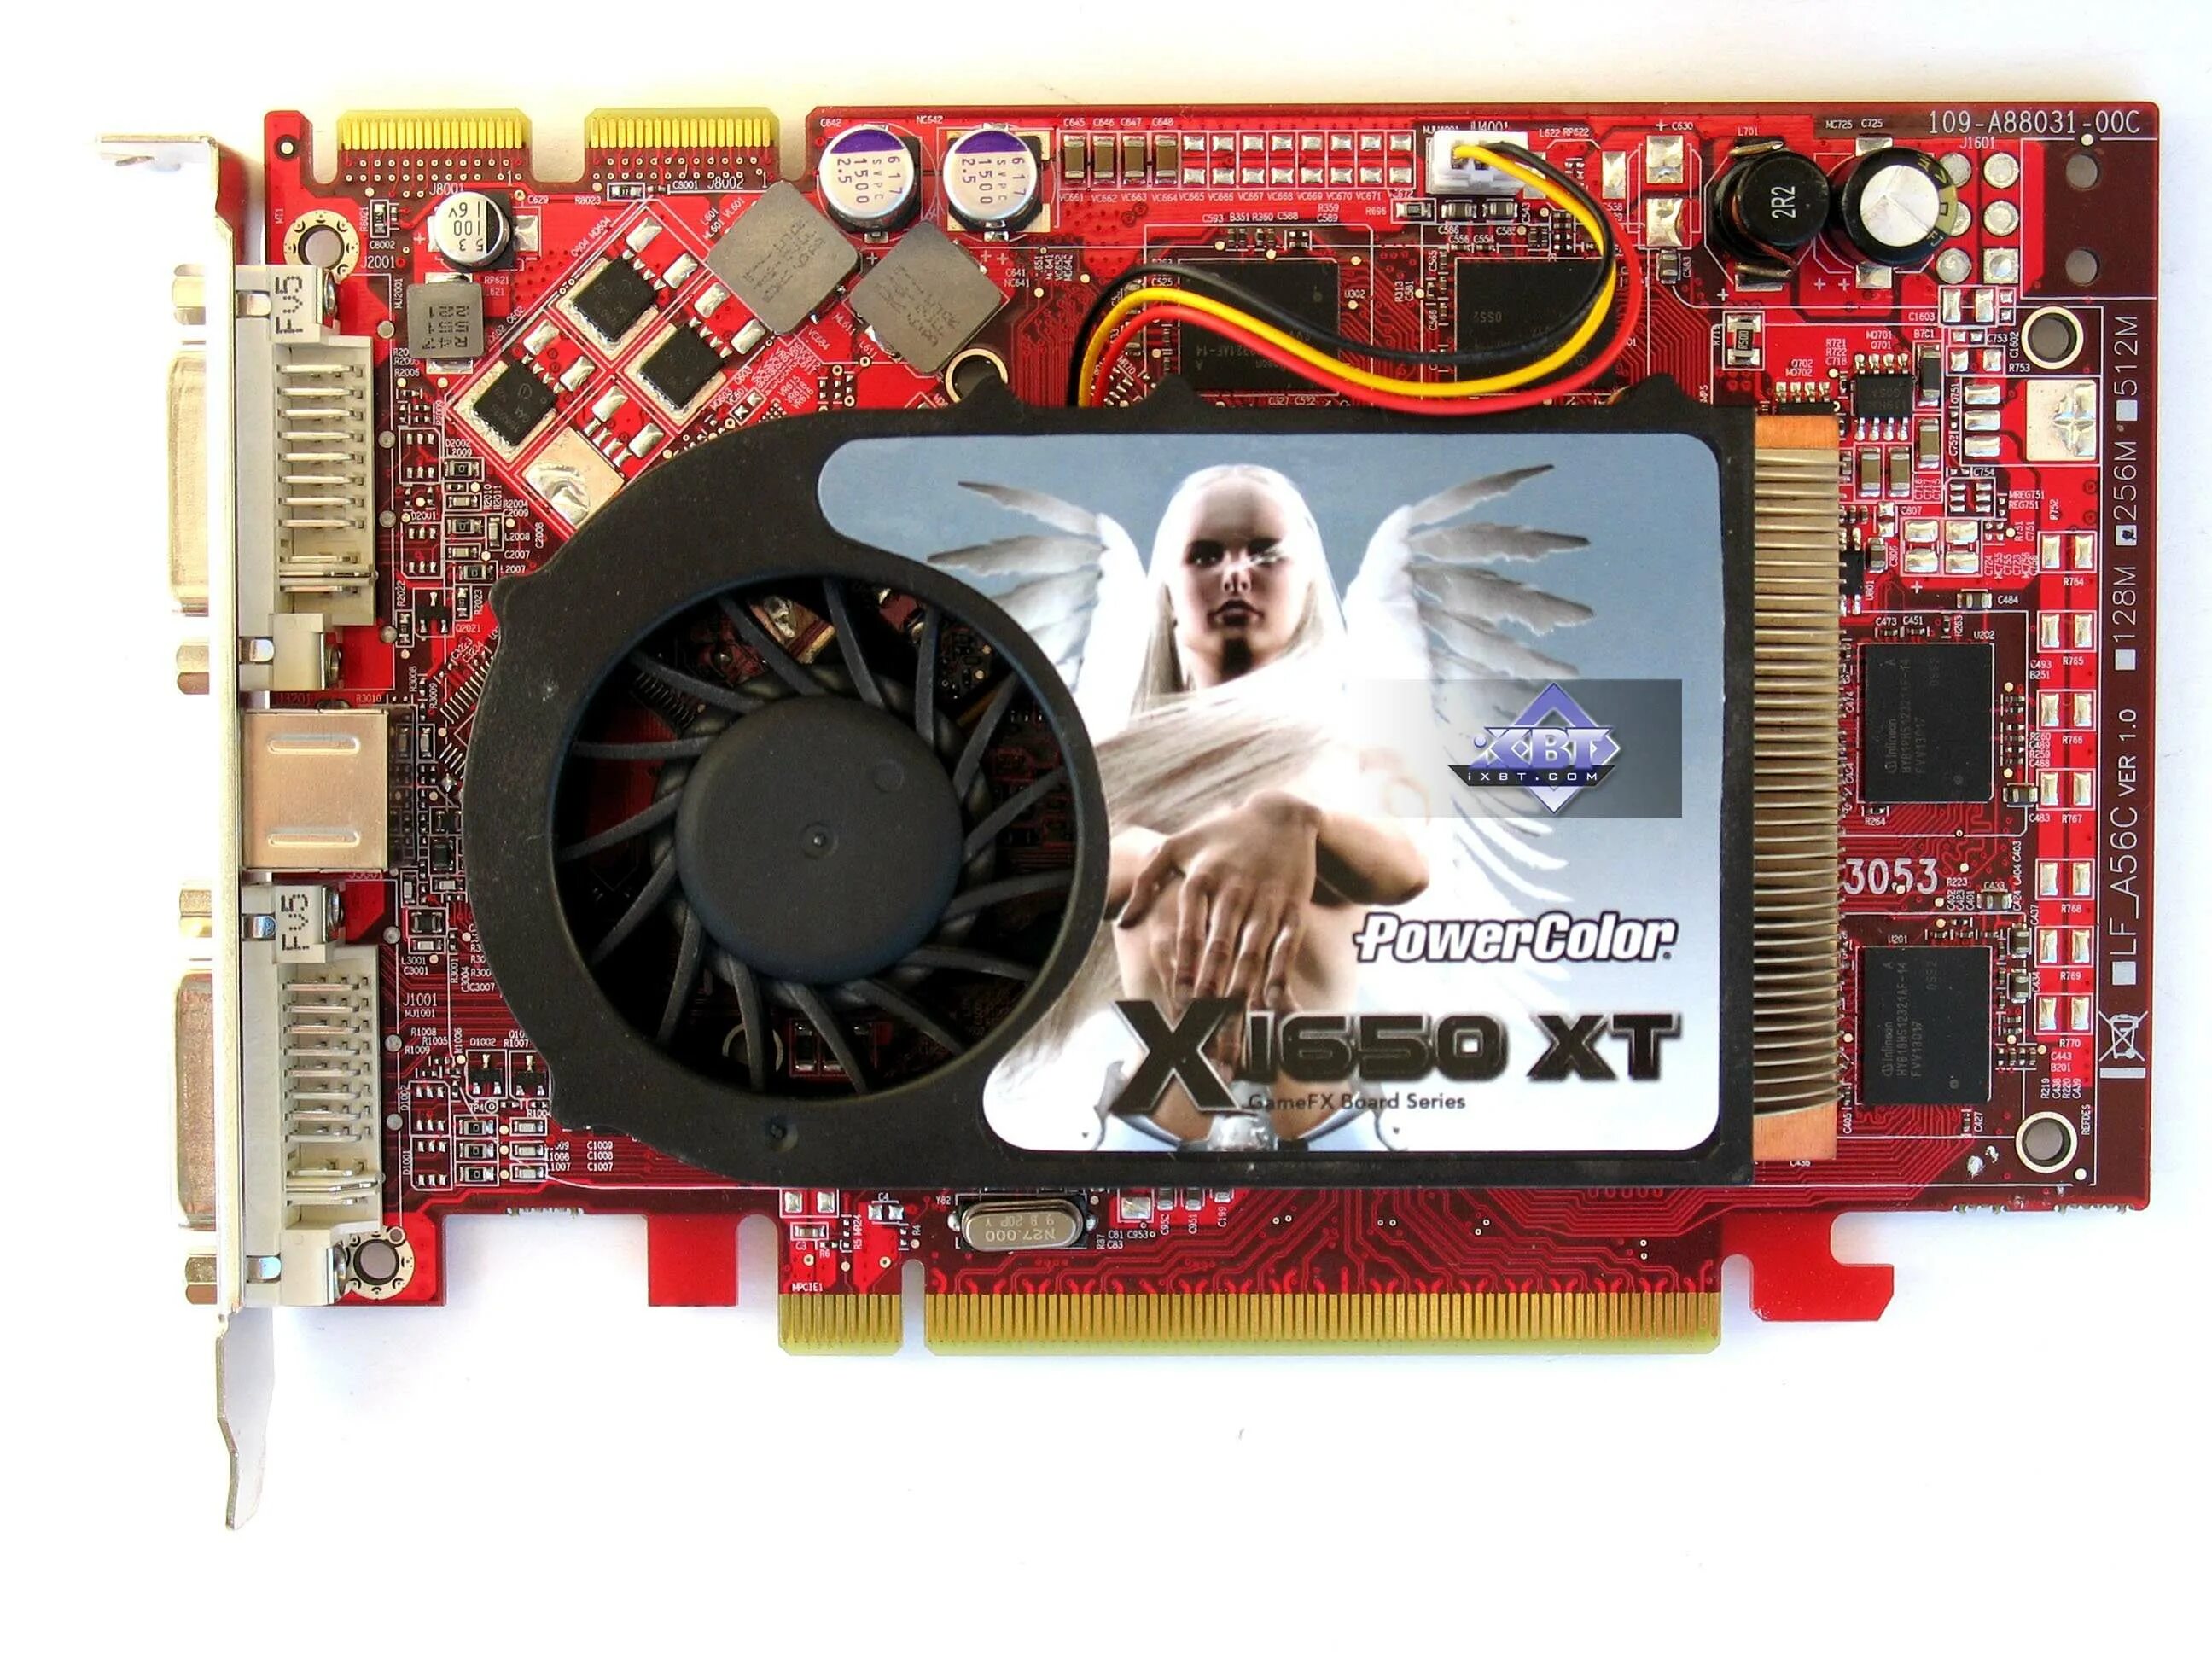 ATI Radeon x1650 XT. Radeon x1650 256 MB. Sapphire Radeon x1650xt 256mb. Radeon x1950 Pro 256.